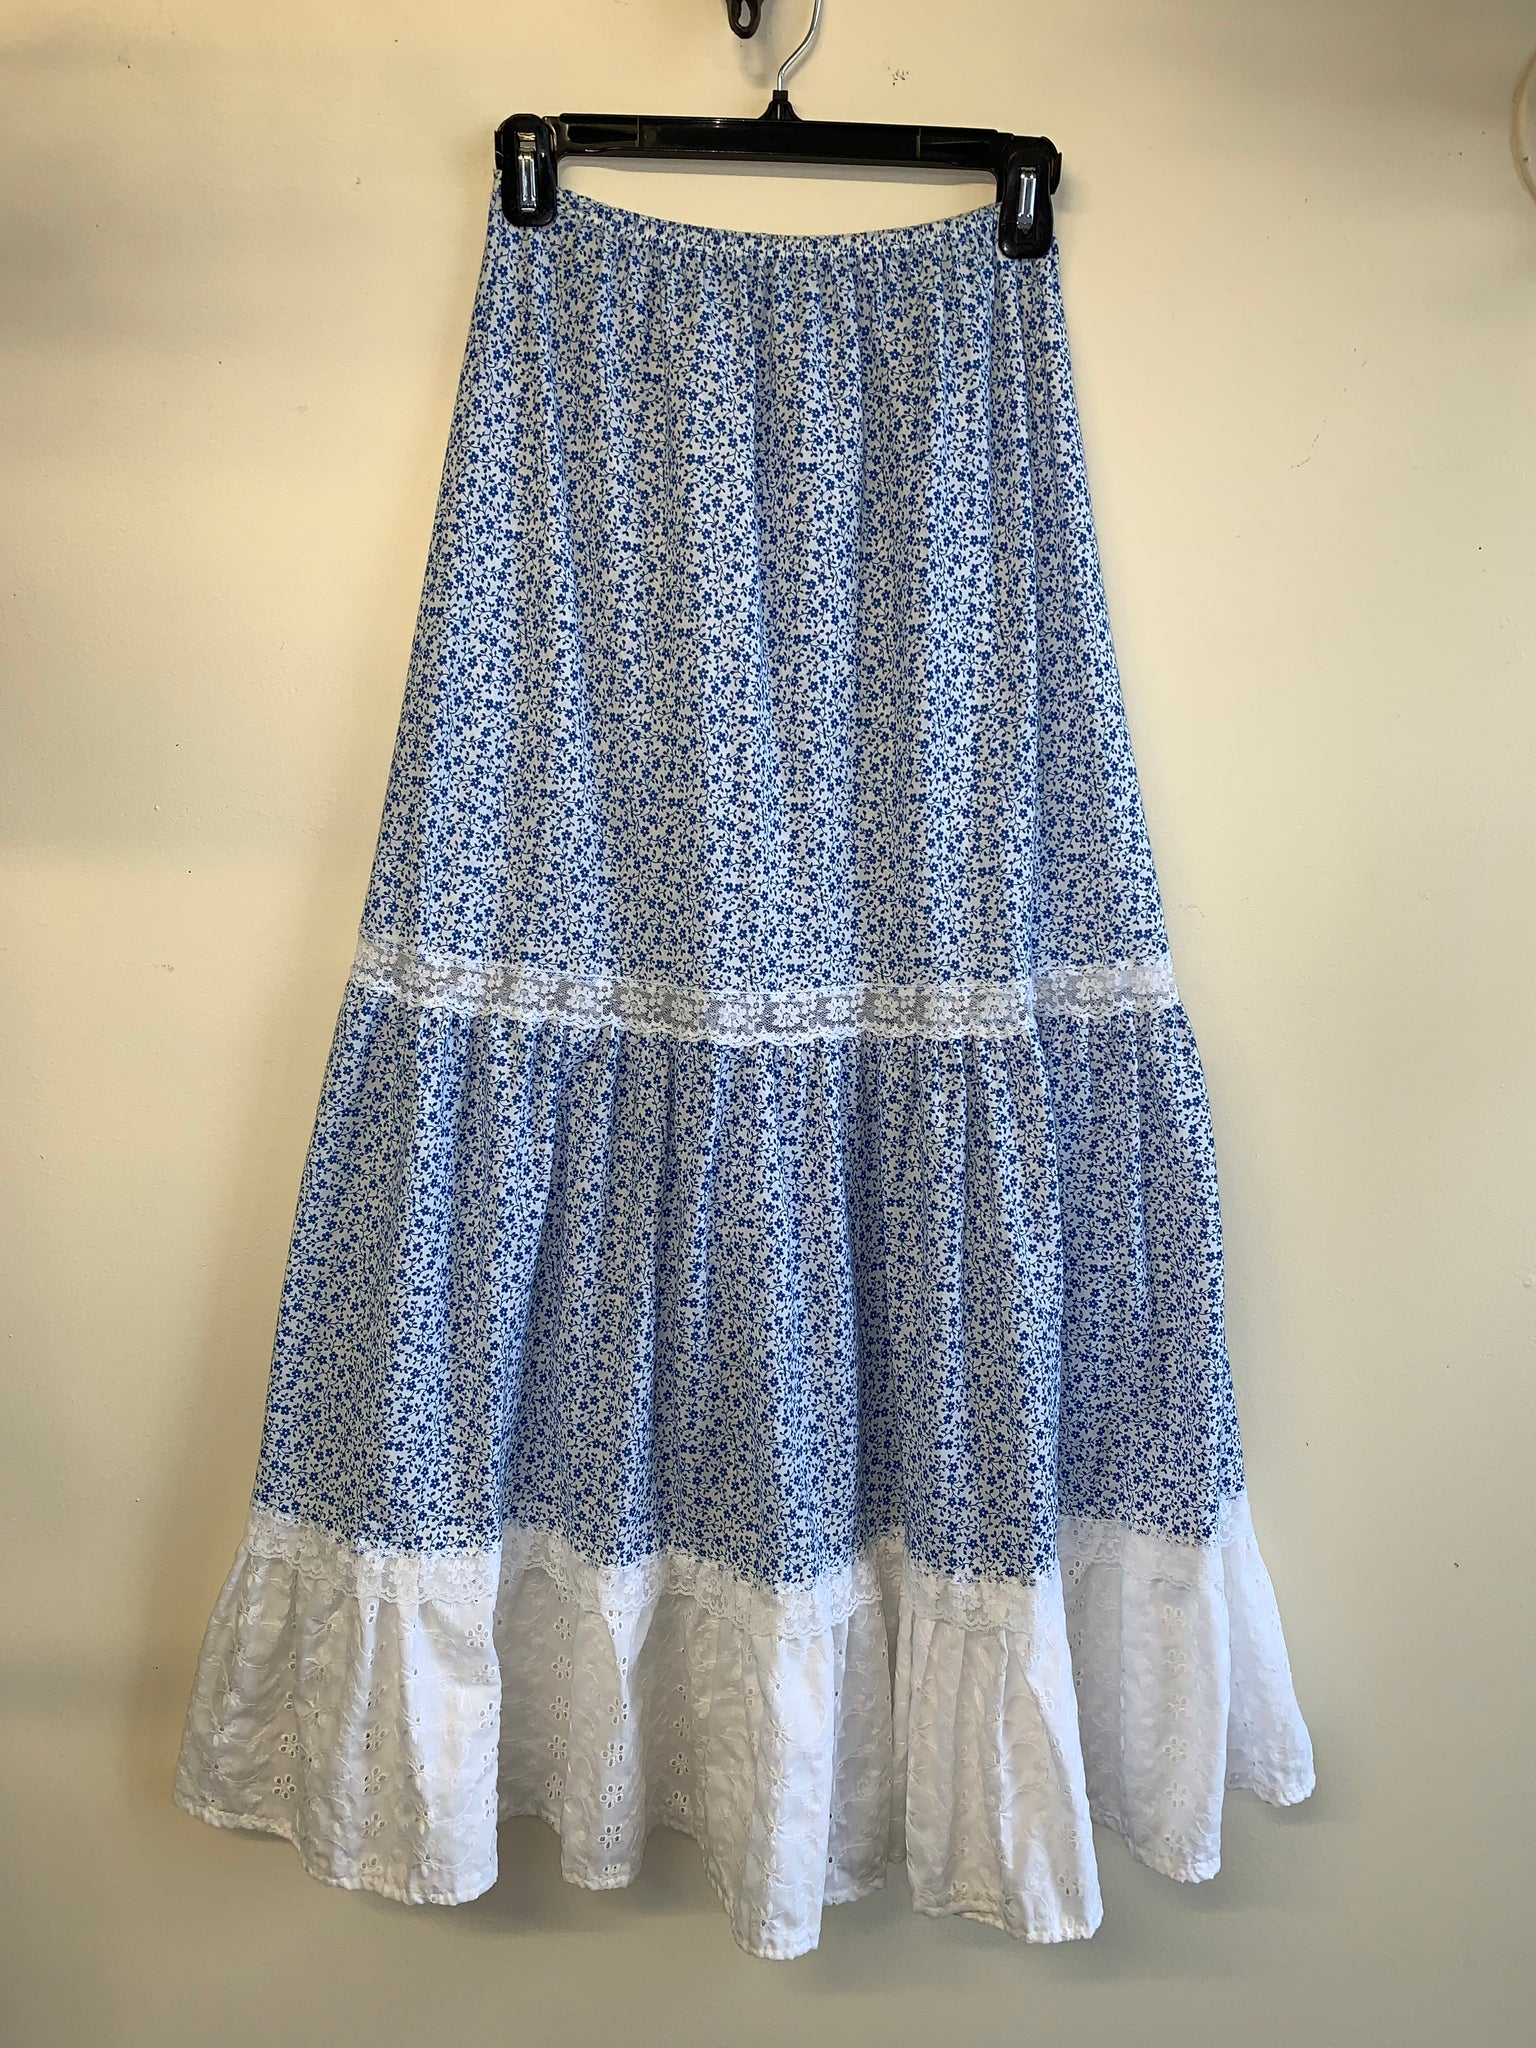 Blue & White Floral Prairie Skirt - M